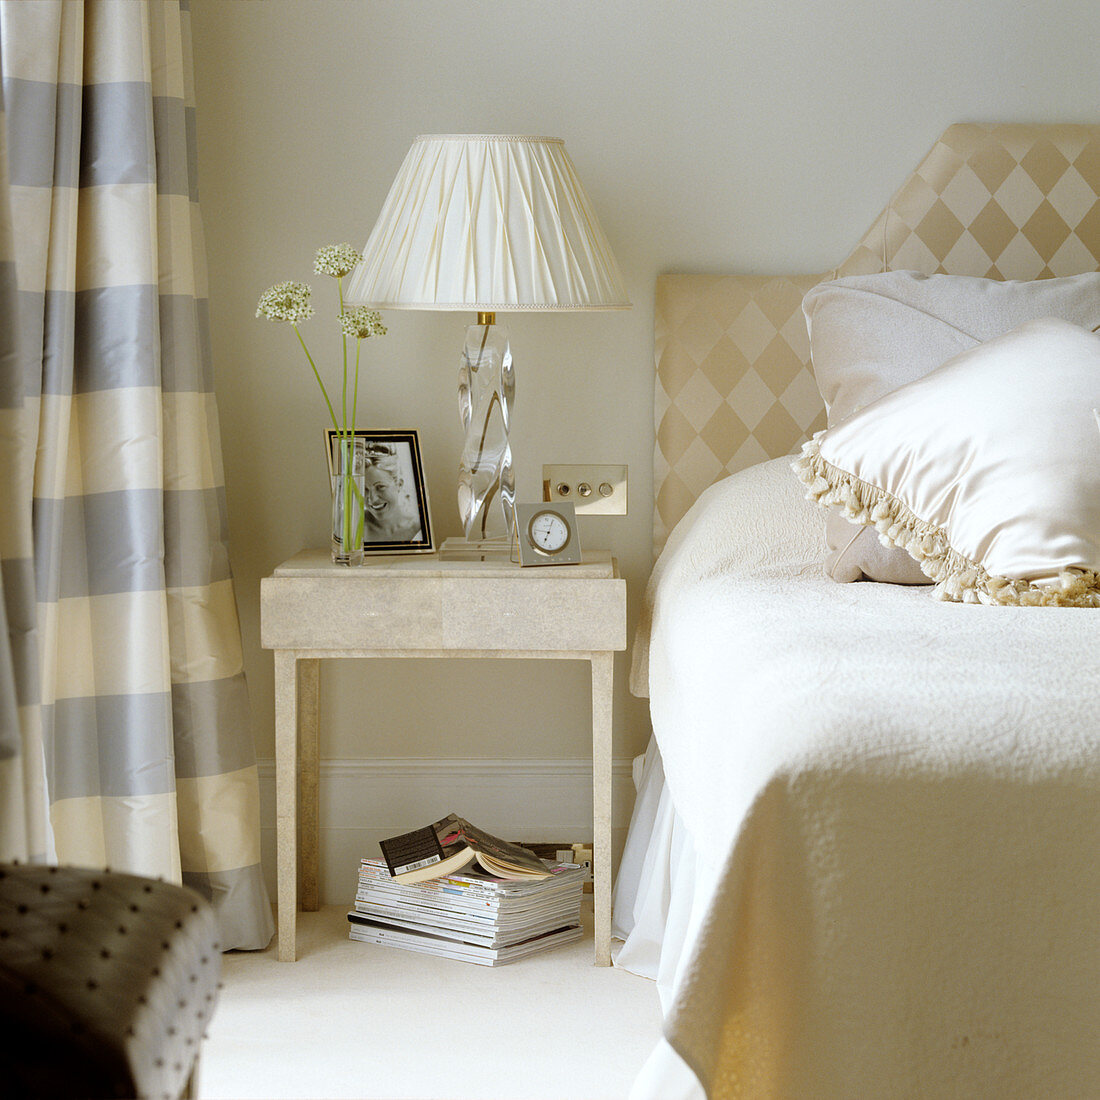 Heller Beistelltisch mit Tischlampe und weißem Stoffschirm neben dem Bett mit gepolstertem Kopfteil an Wand